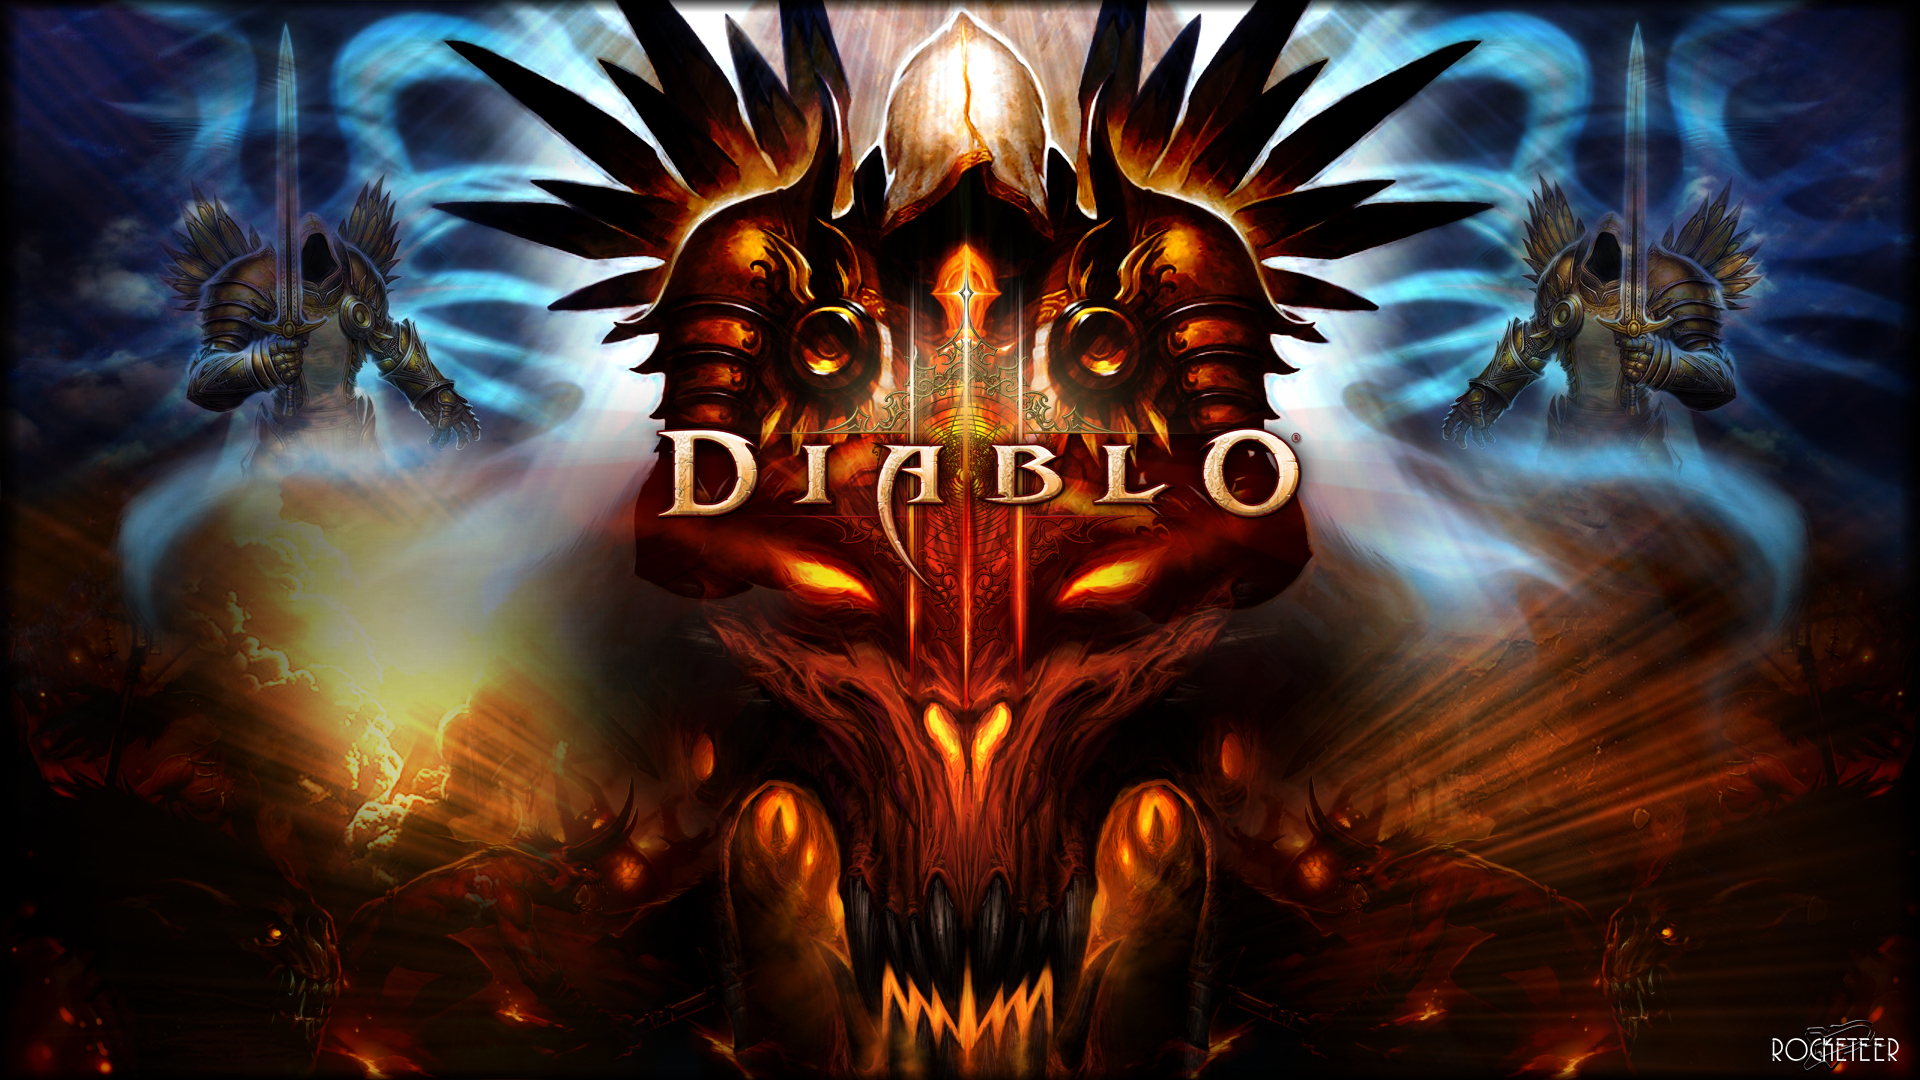 Free Download Diablo 3 Fonds Dcran De Fans Diablo 3 1920x1080 For Your Desktop